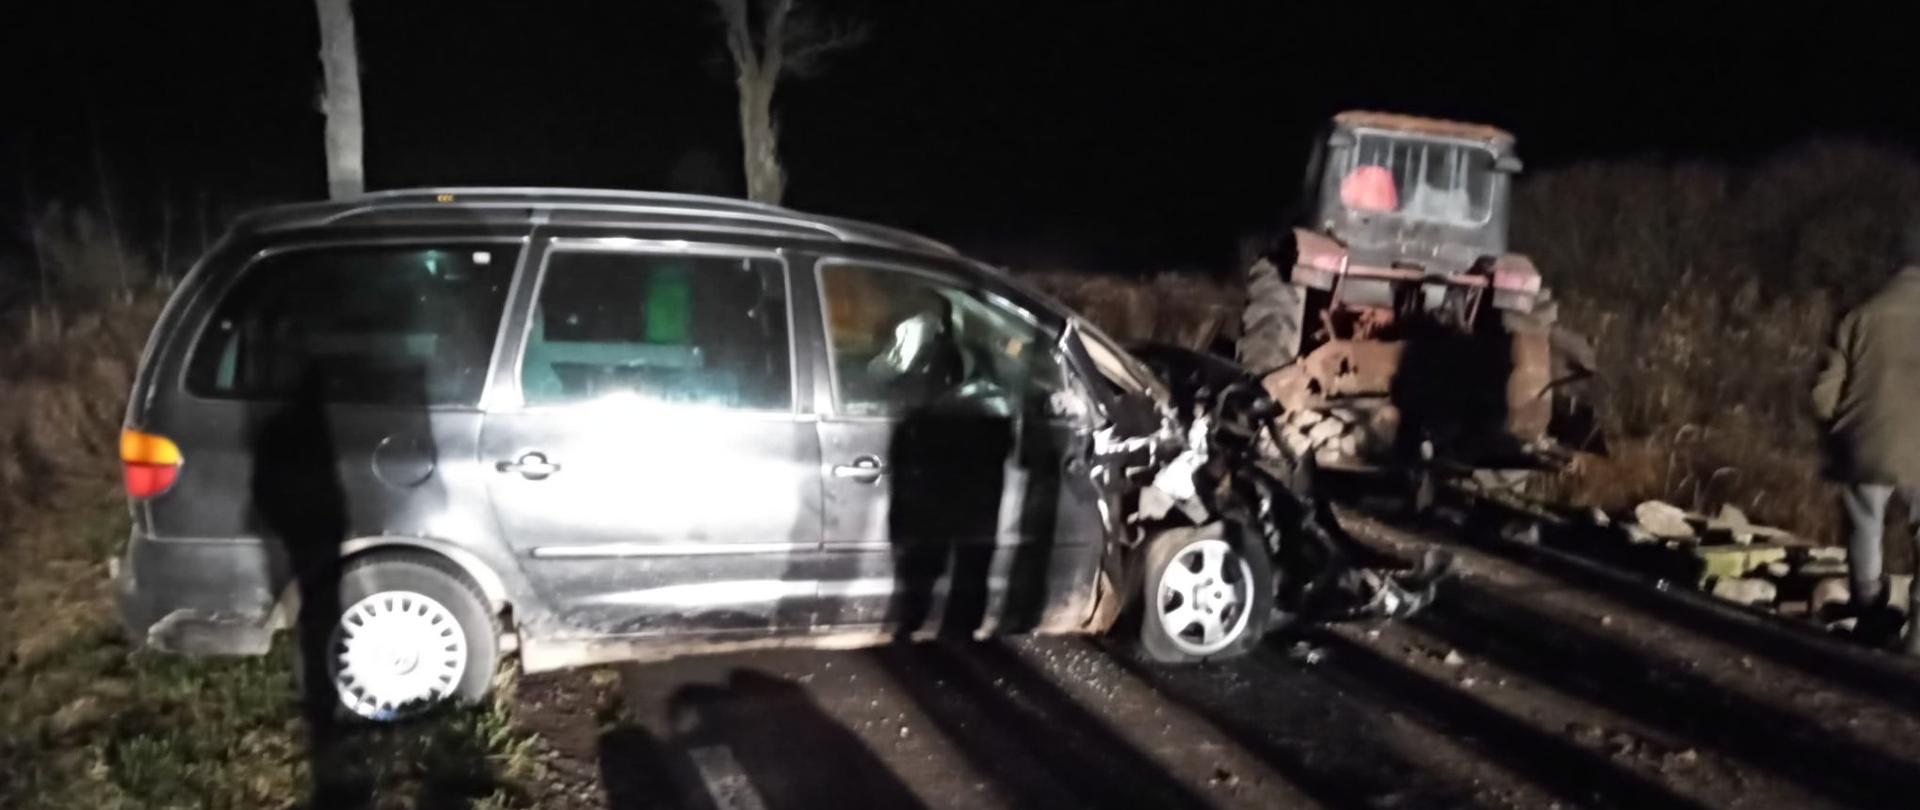 Na zdjęciu widnieje rozbity samochód osobowy i ciągnik rolniczy po wypadku. 